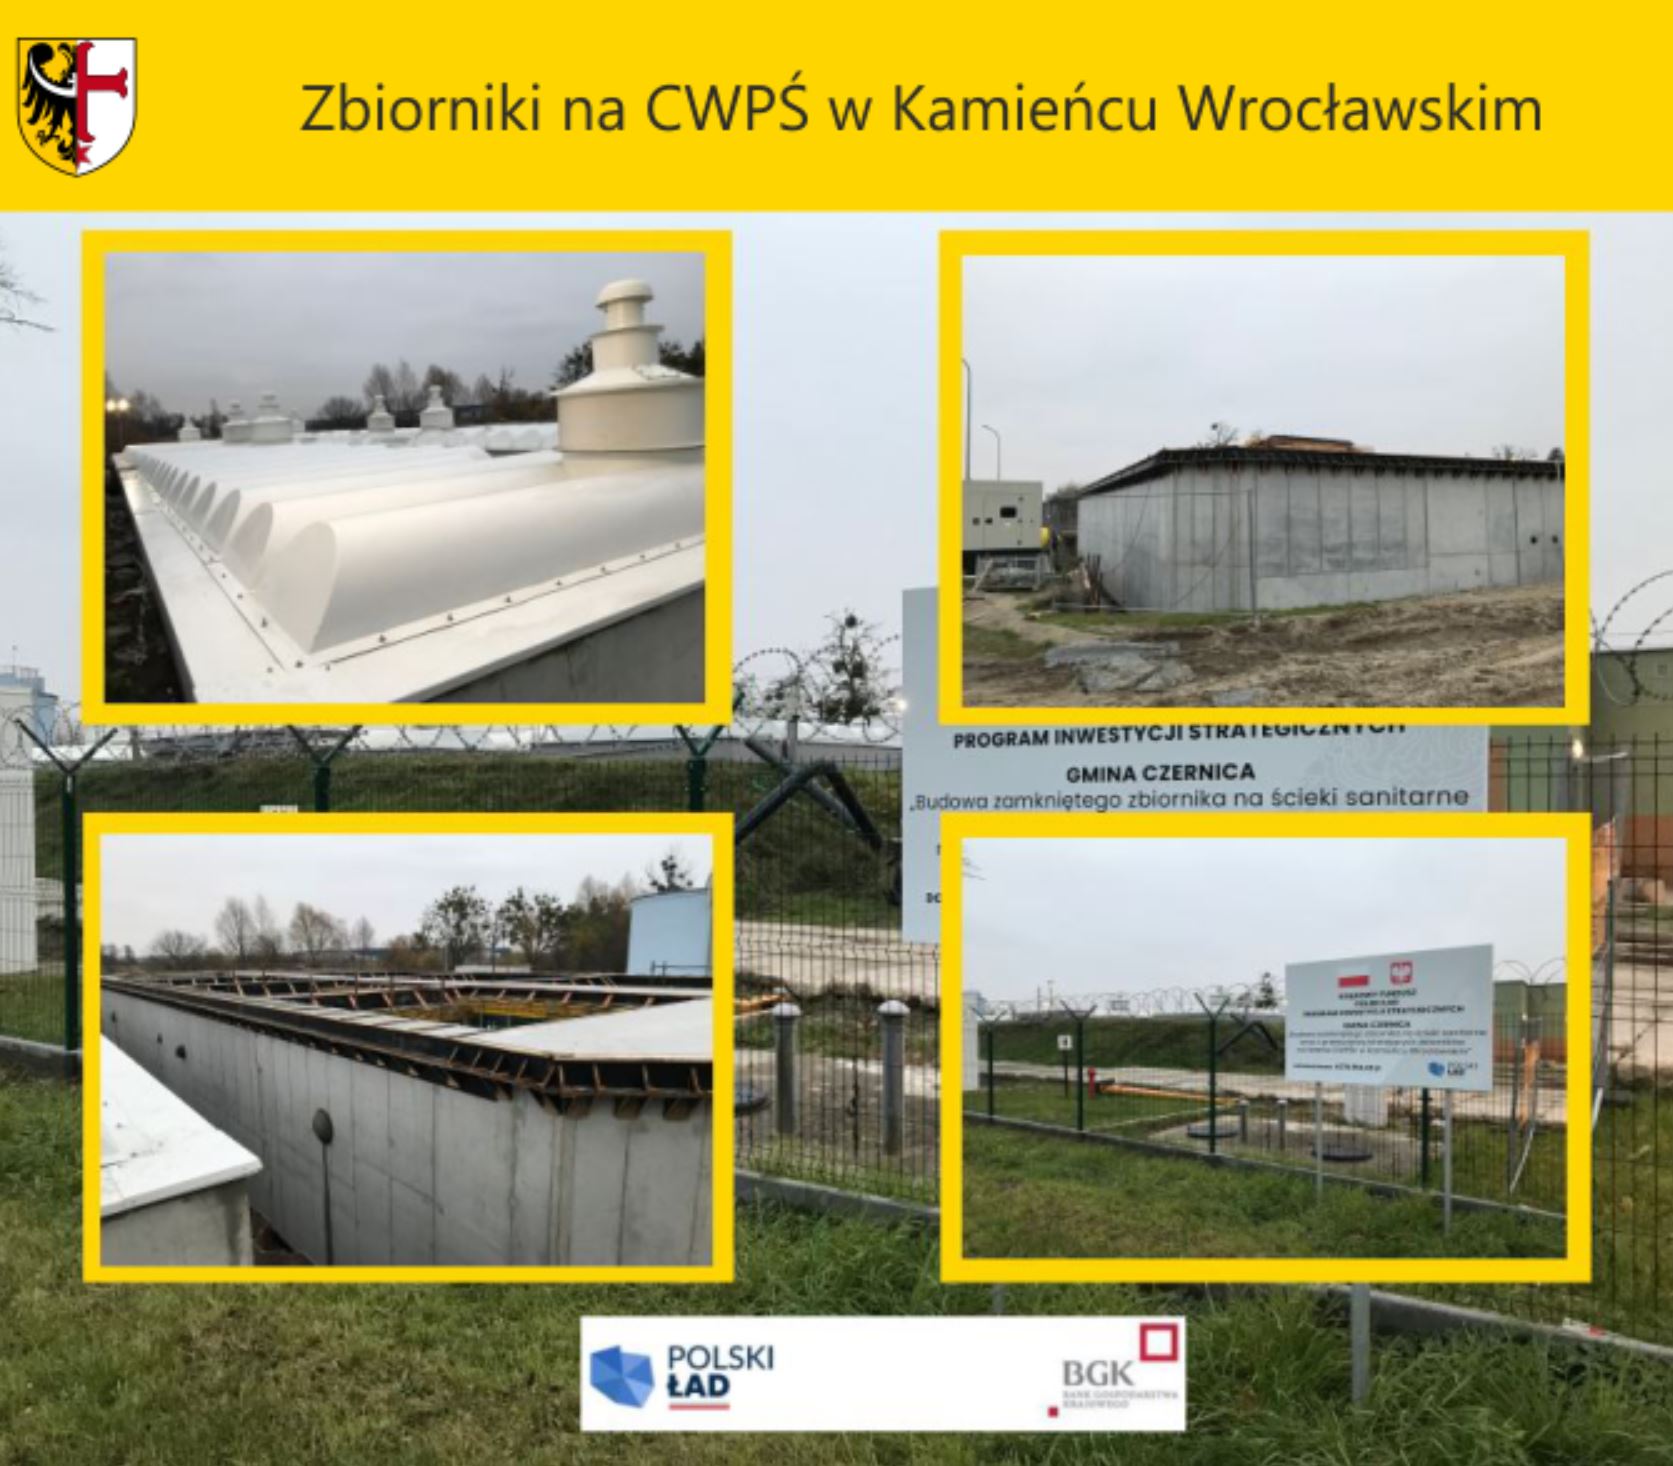 Zbiorniki na CWPŚ w Kamieńcu Wrocławskim